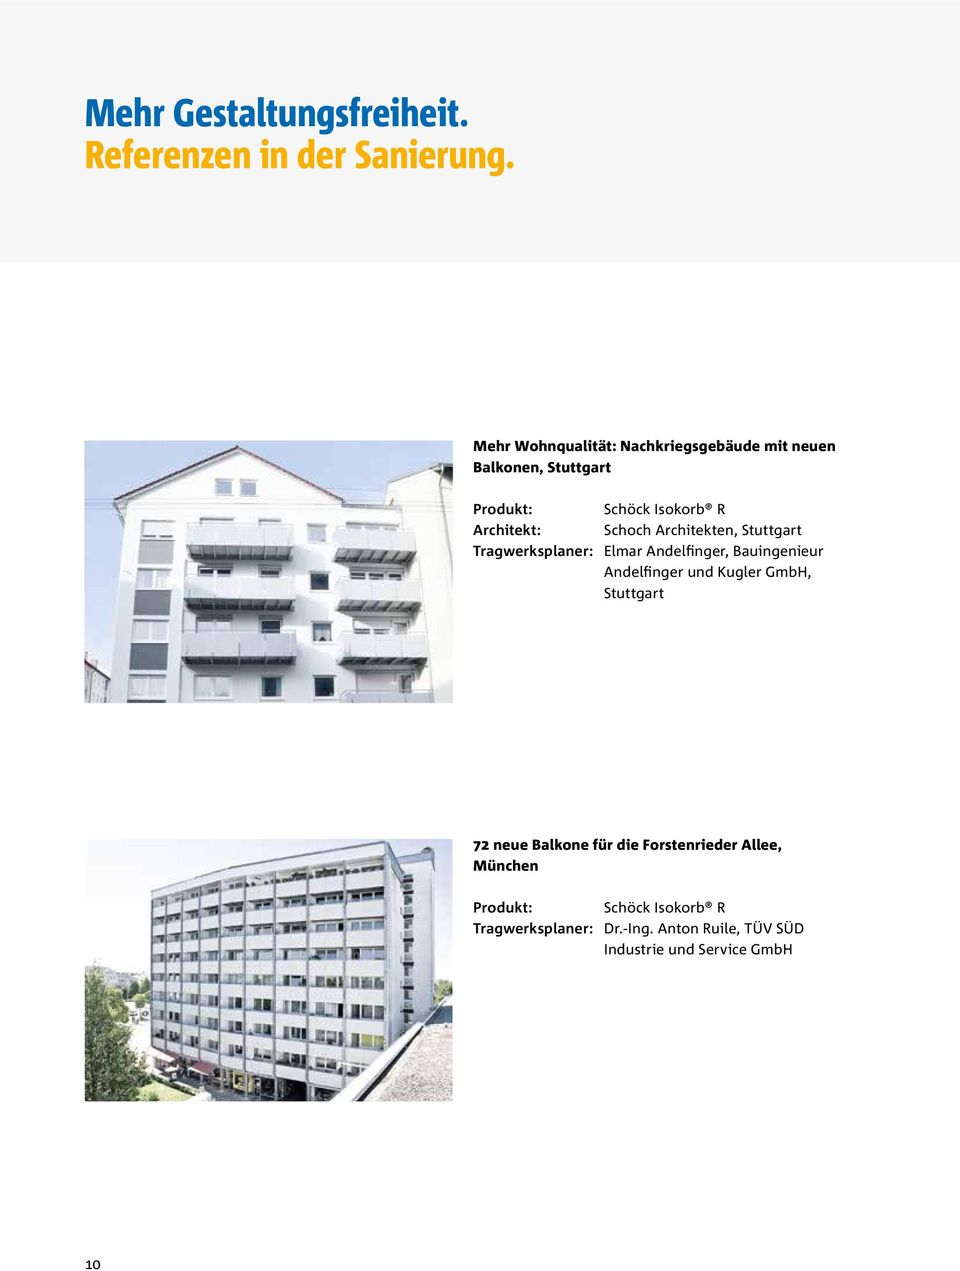 Schoch Architekten, Stuttgart Tragwerksplaner: Elmar Andelfinger, Bauingenieur Andelfinger und Kugler GmbH,